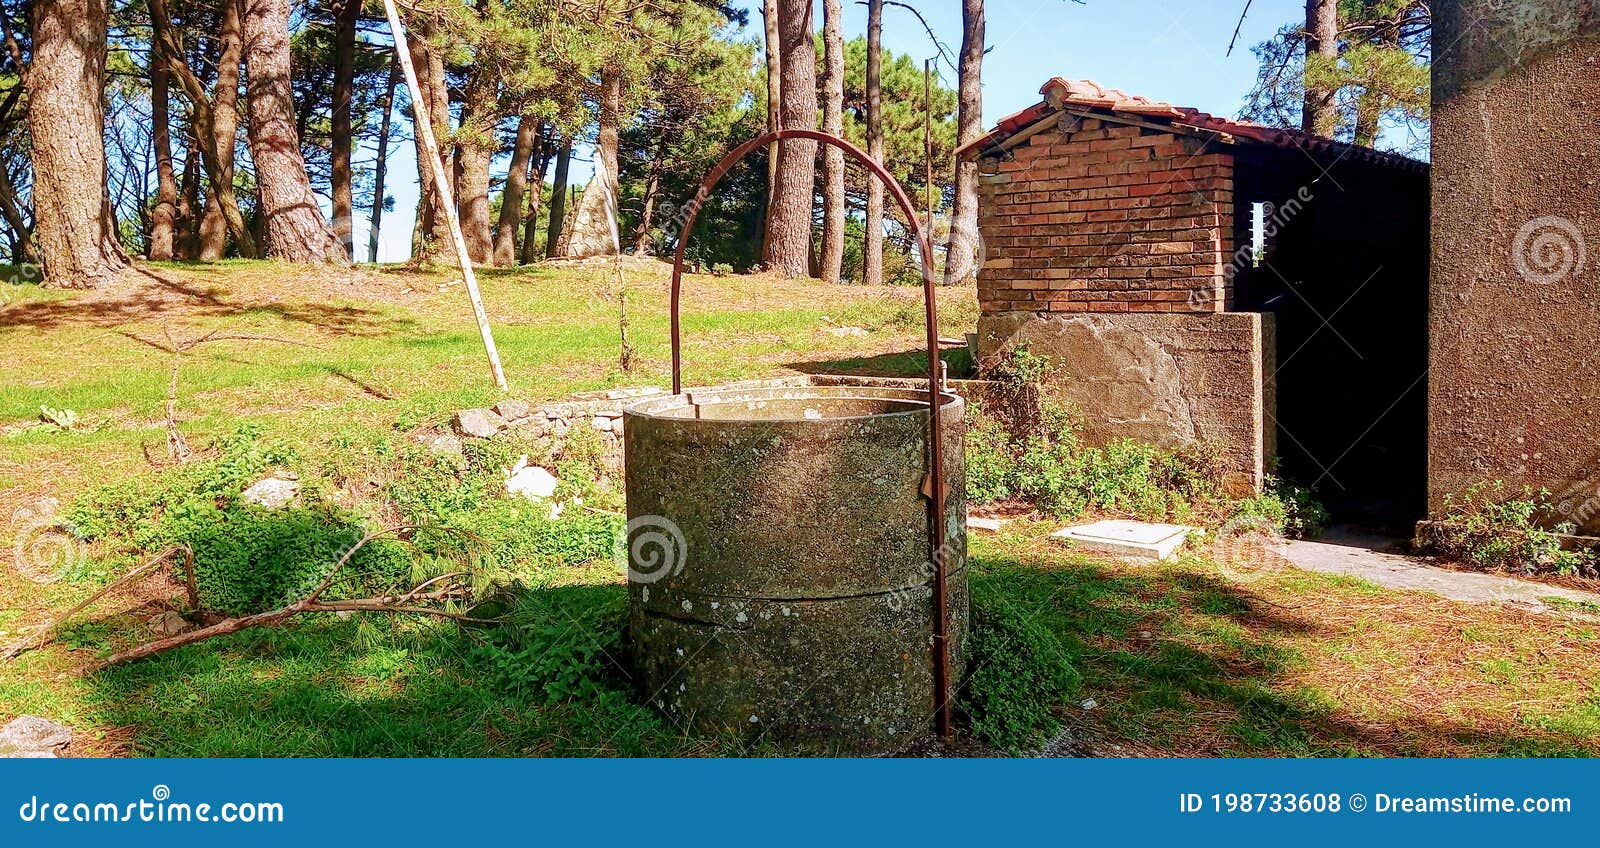 an ancien sicilian well